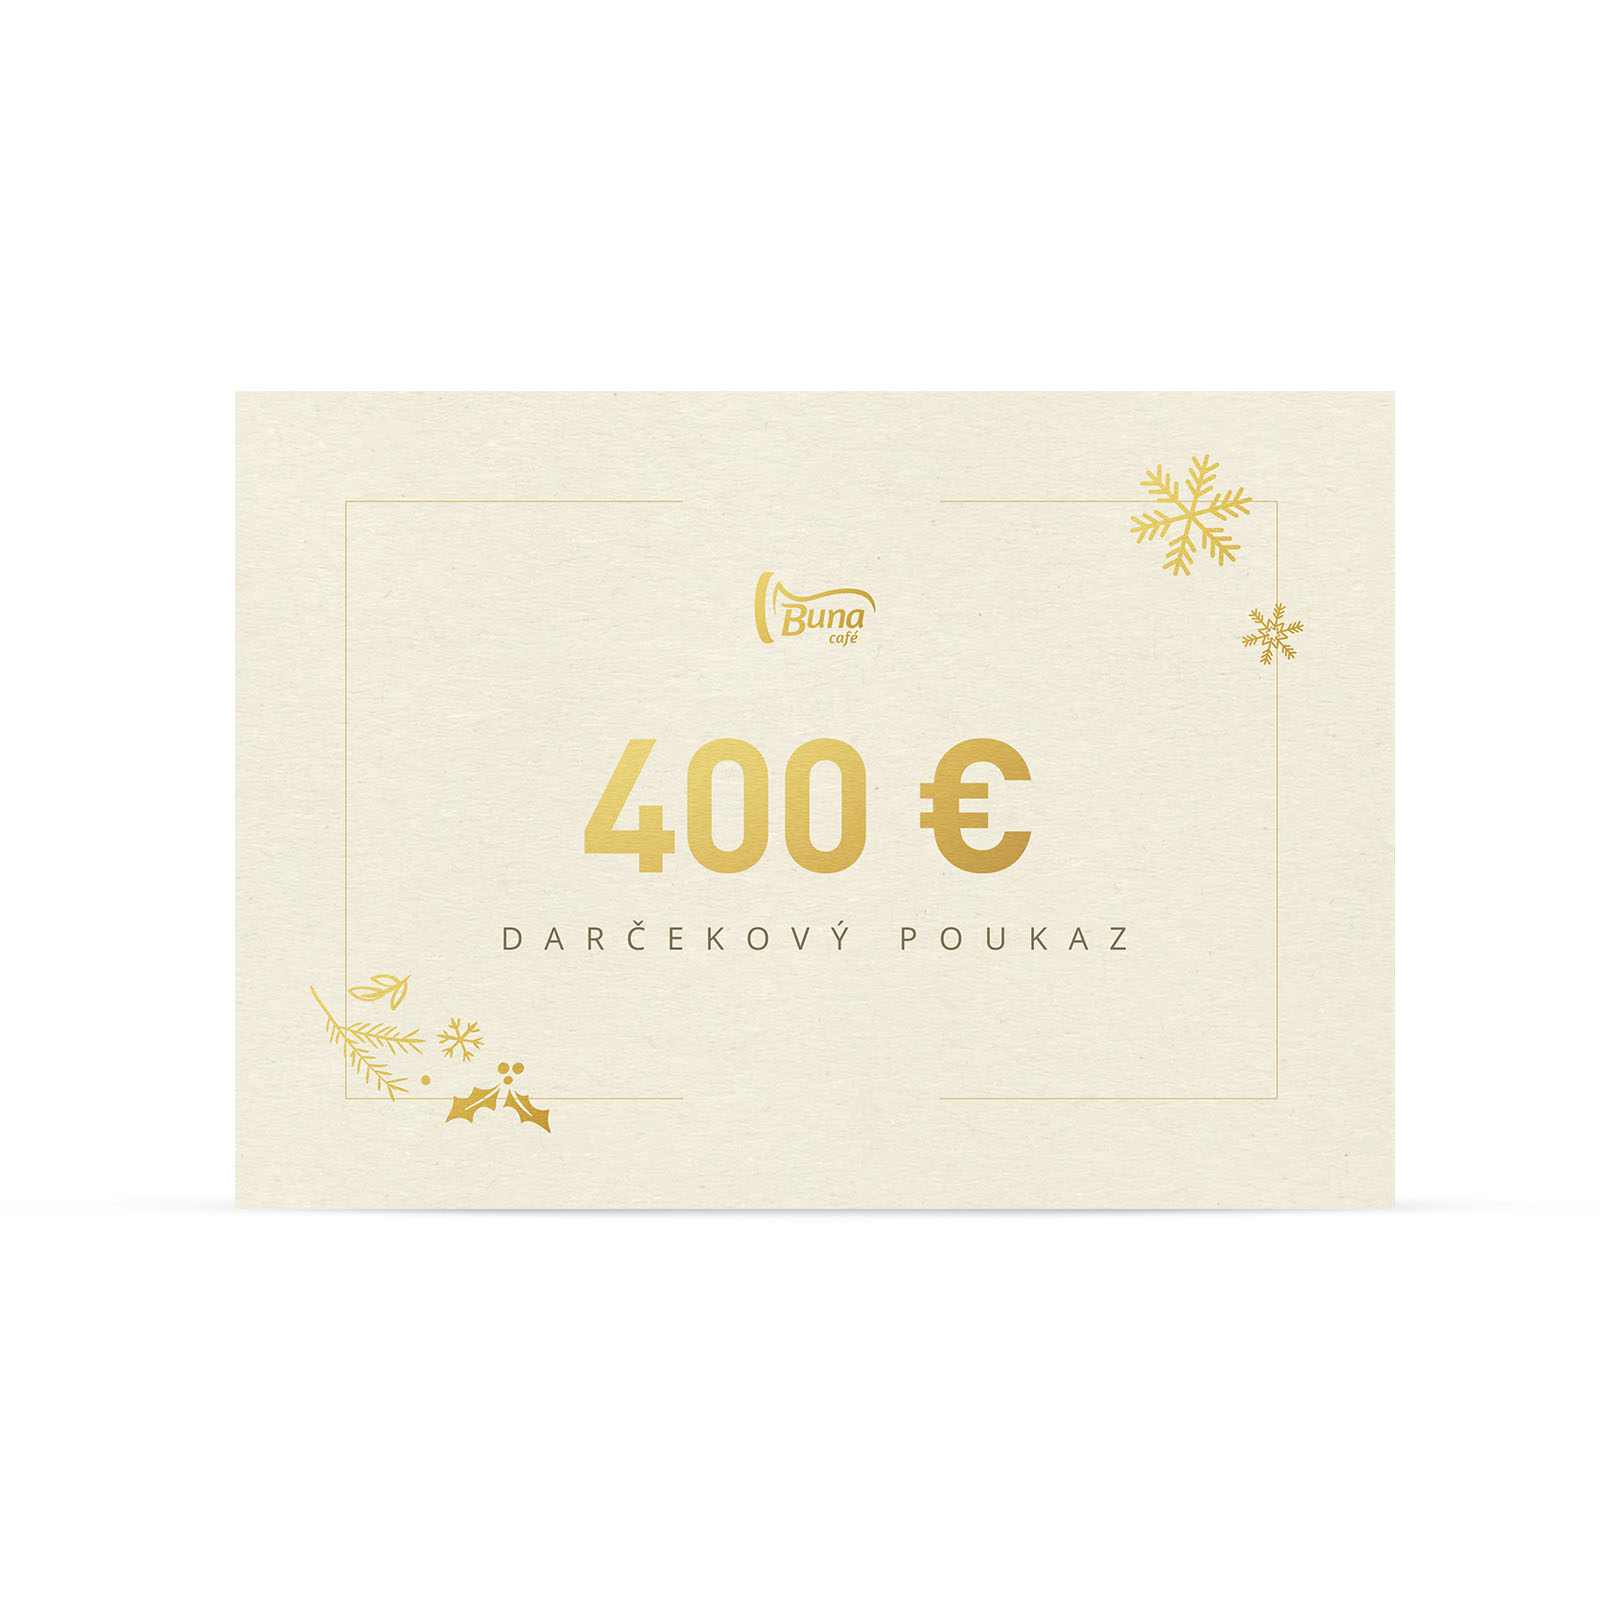 Buna café darčekový poukaz v hodnote 400 €